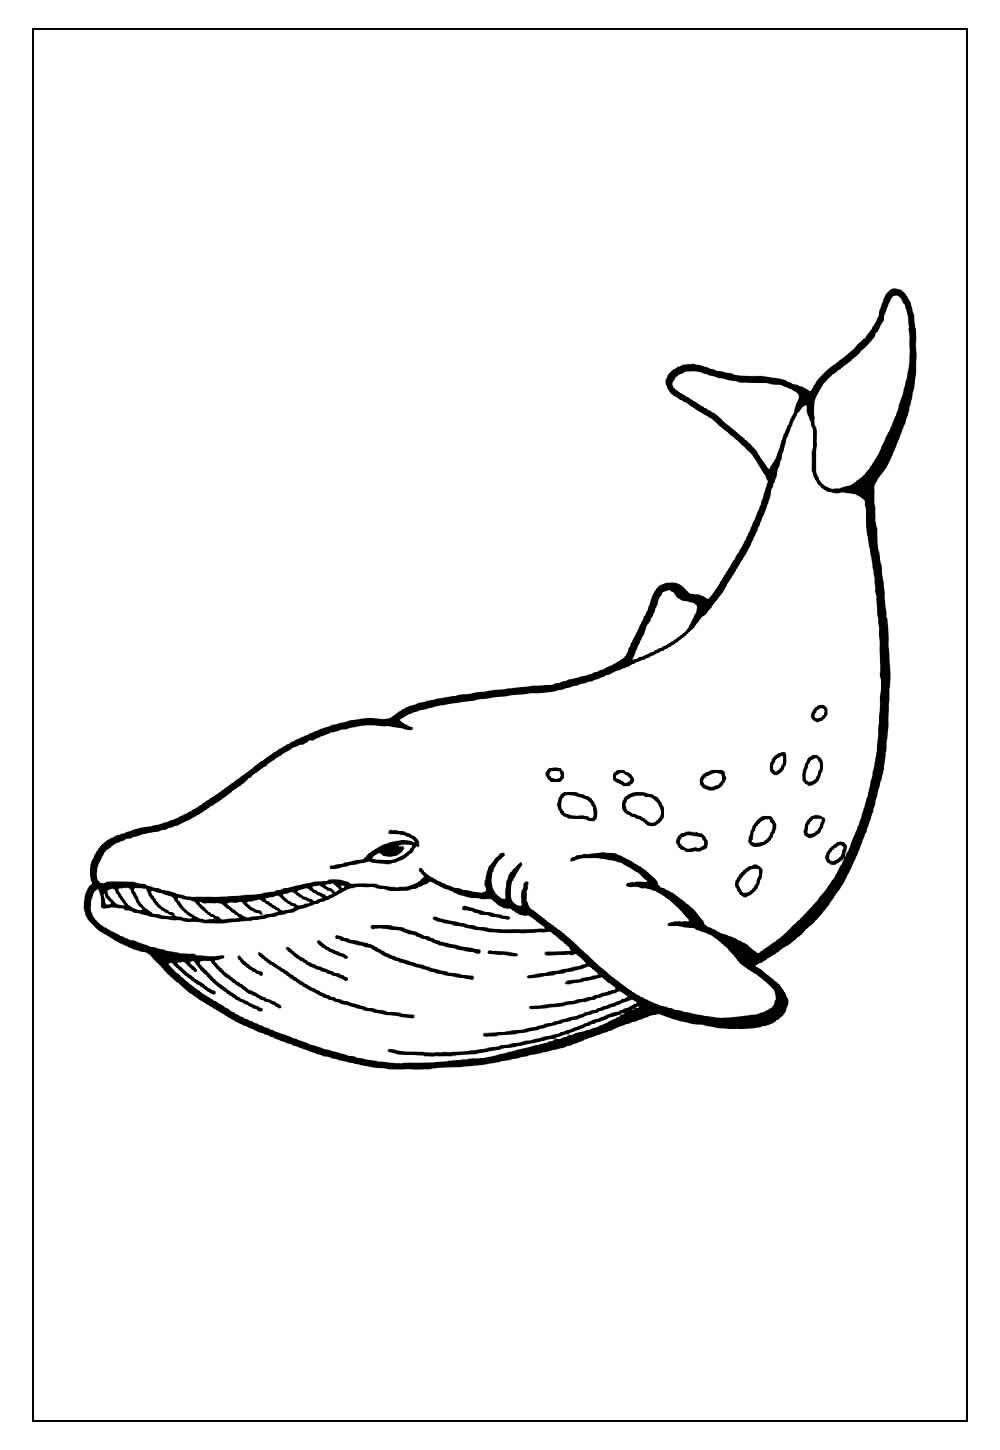 Desenho de Baleia envergonhada para Colorir - Colorir.com